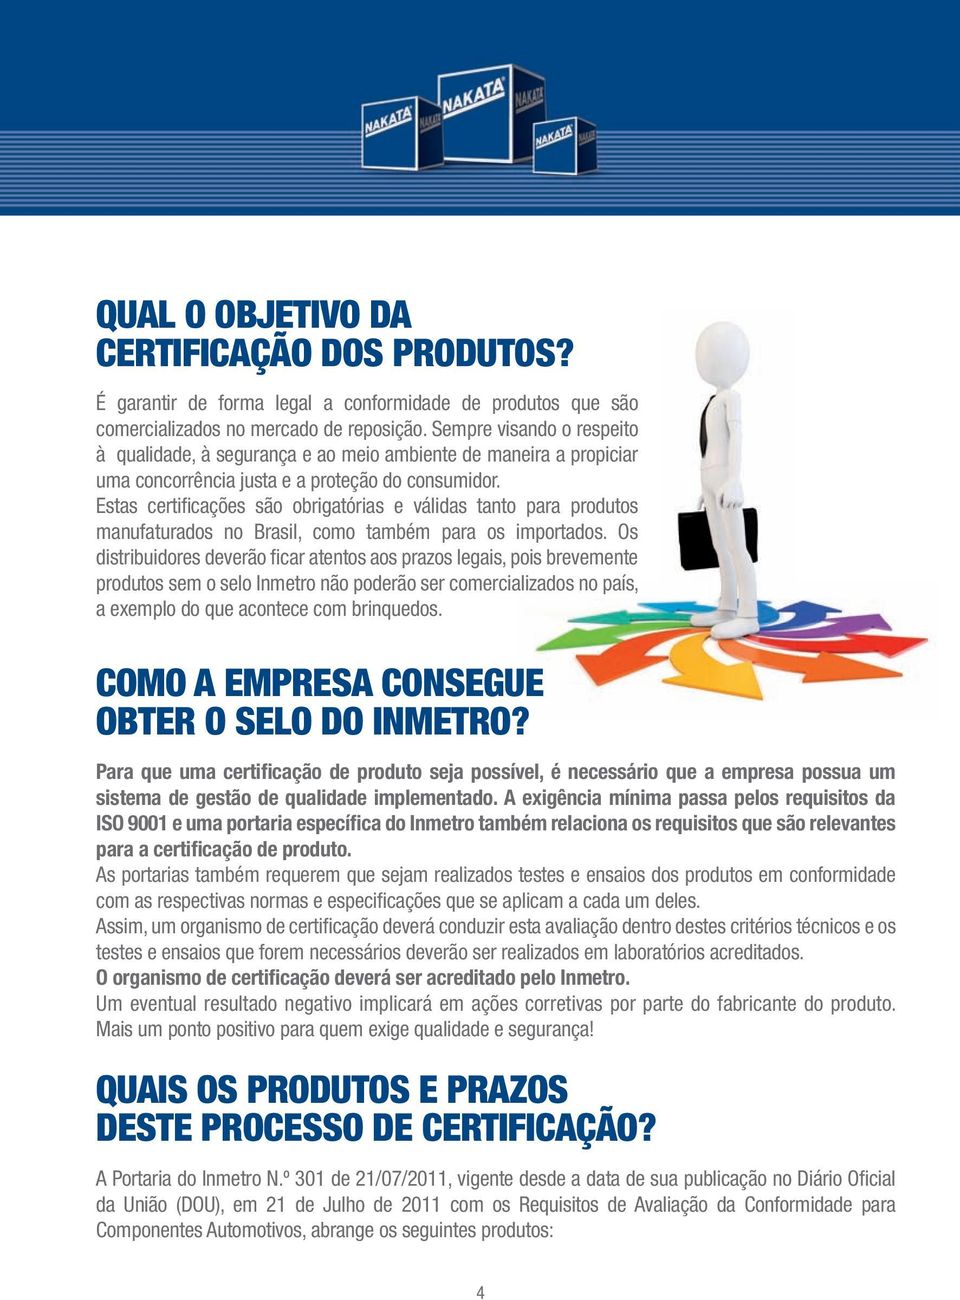 Estas certifi cações são obrigatórias e válidas tanto para produtos manufaturados no Brasil, como também para os importados.